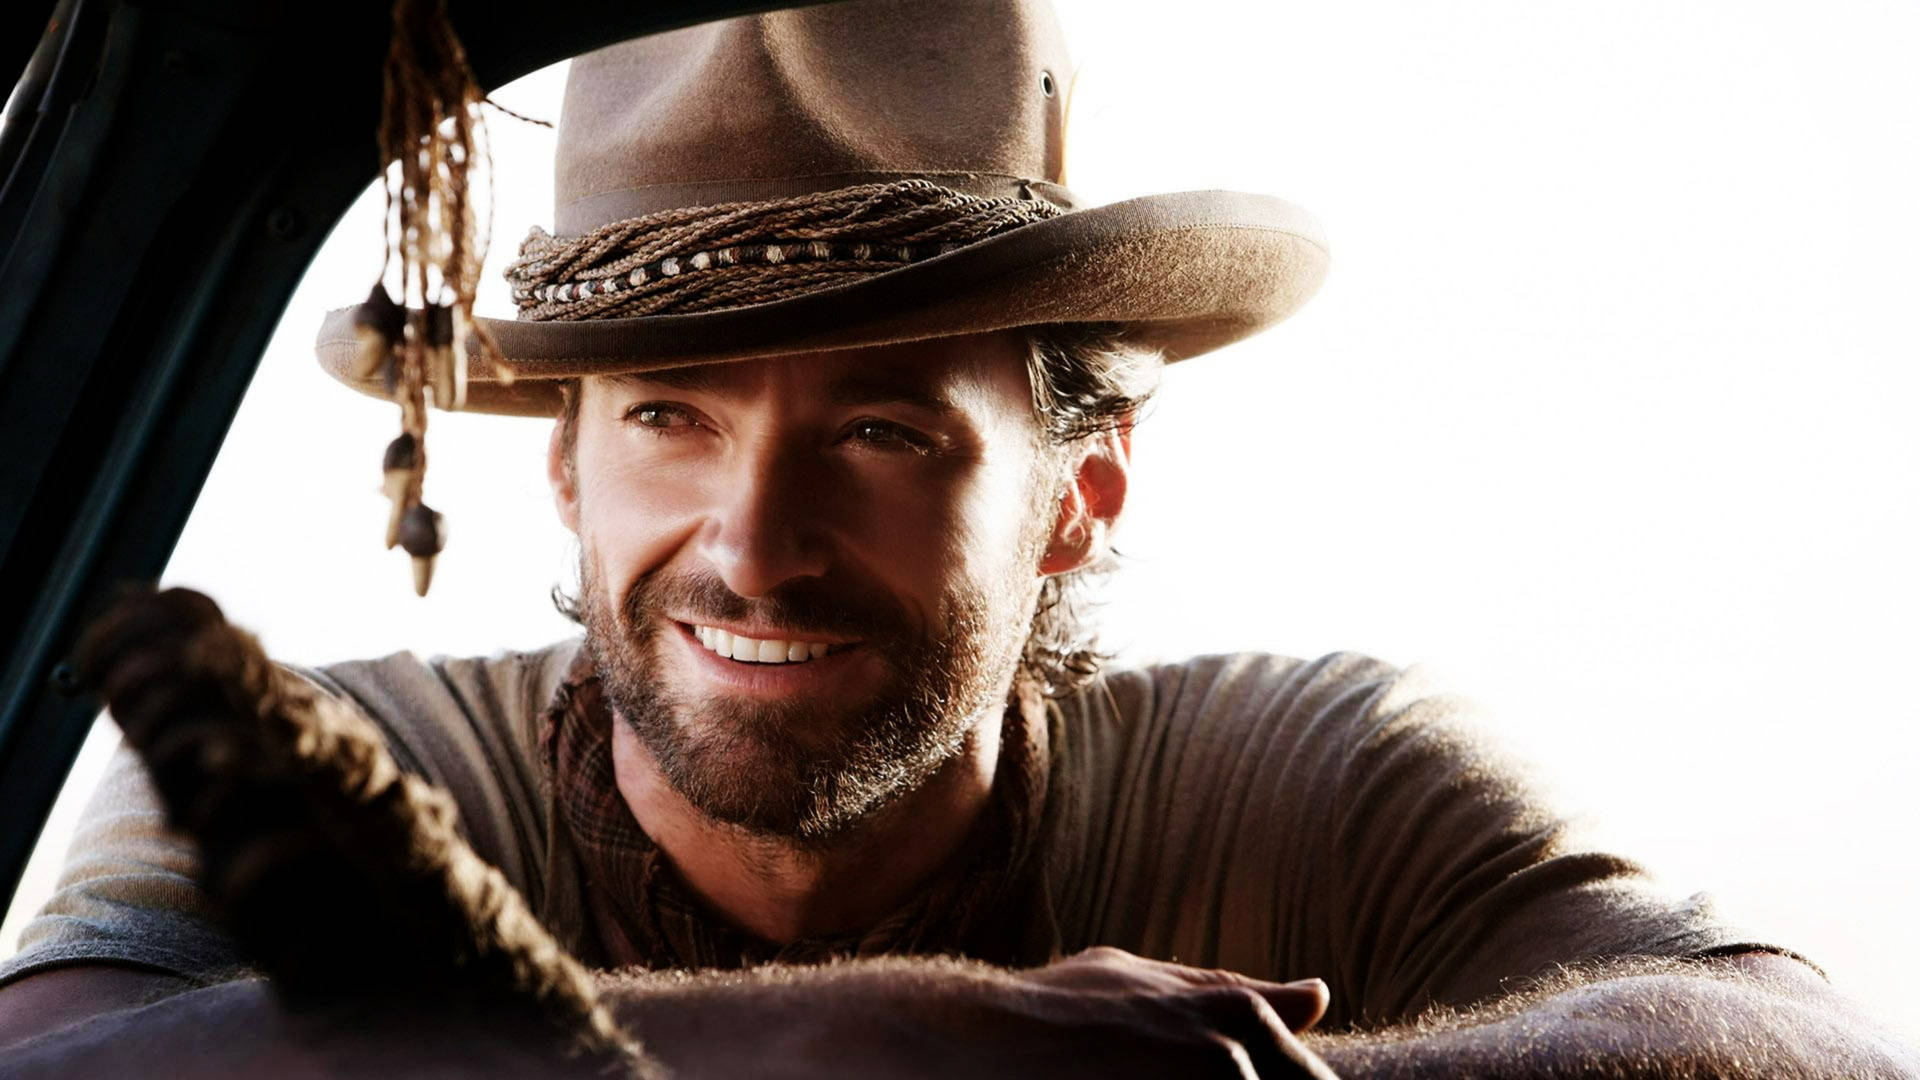 Hugh Jackman In Cowboy Hat Background